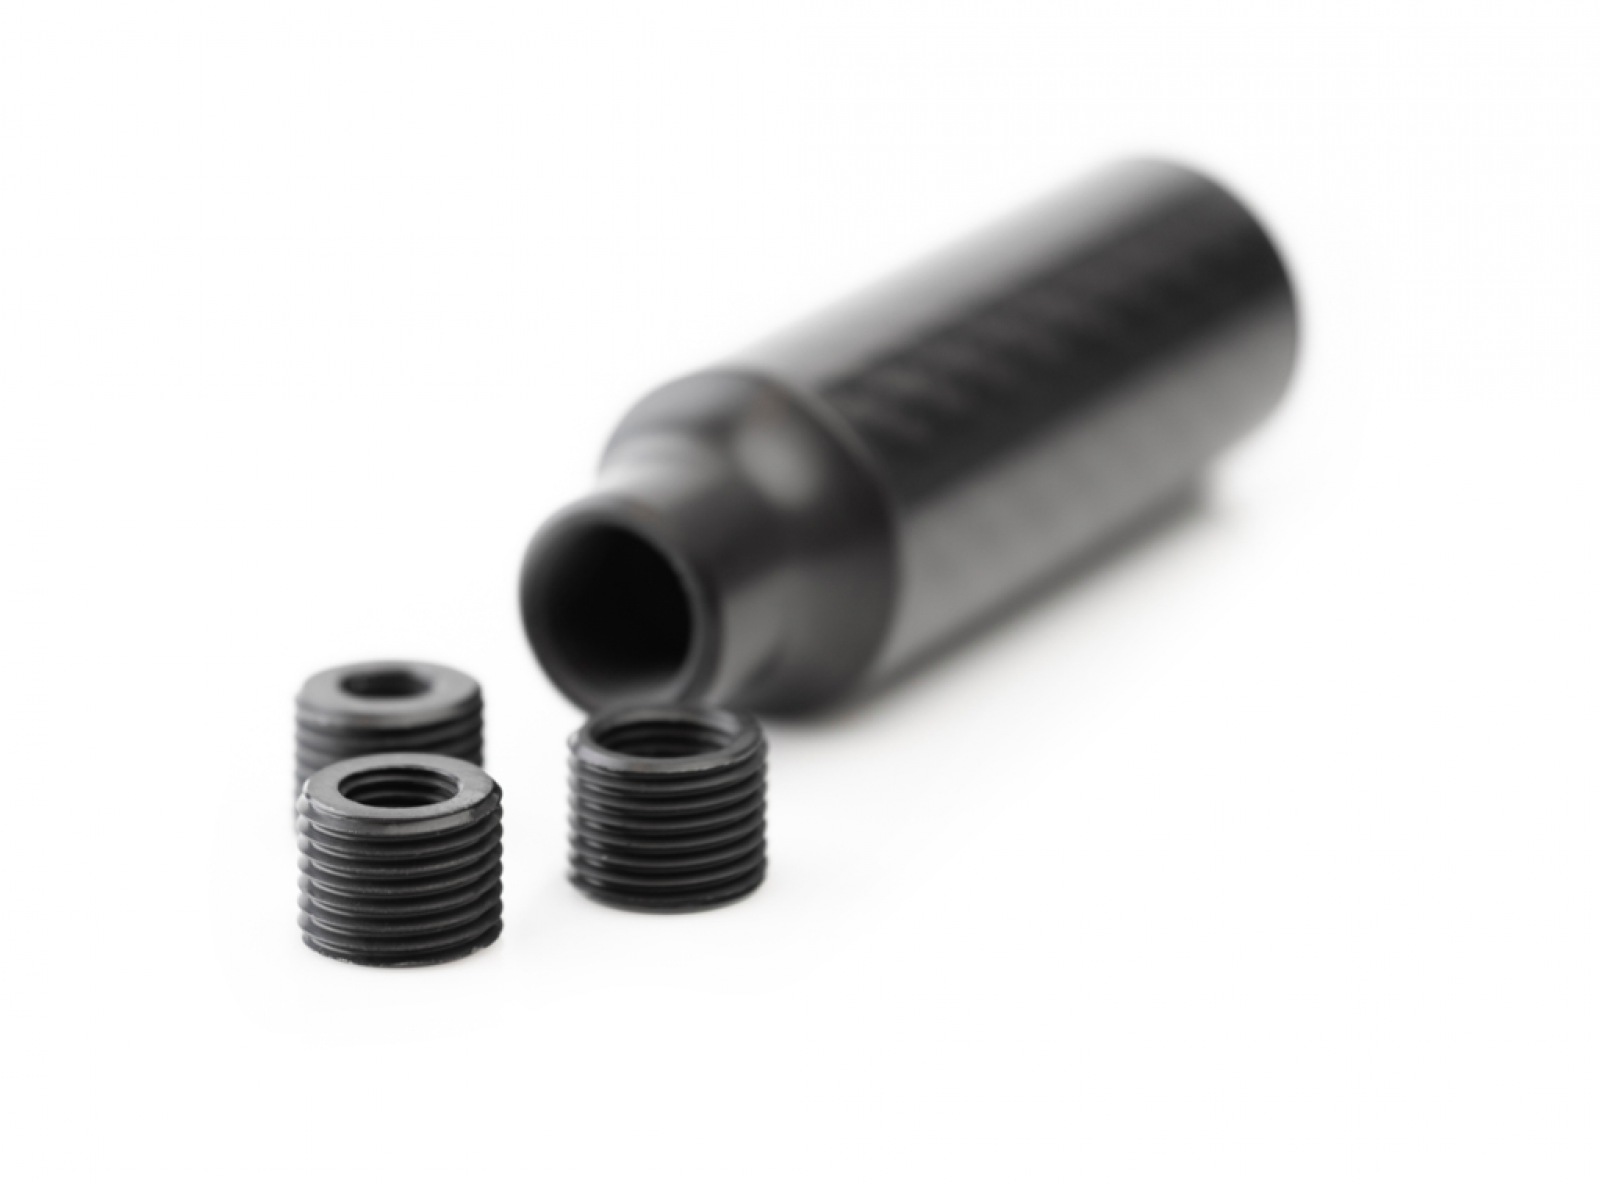 Nuke Performance Cavernous Carbon Fiber Shift Knob - Gloss Finish, 65mm